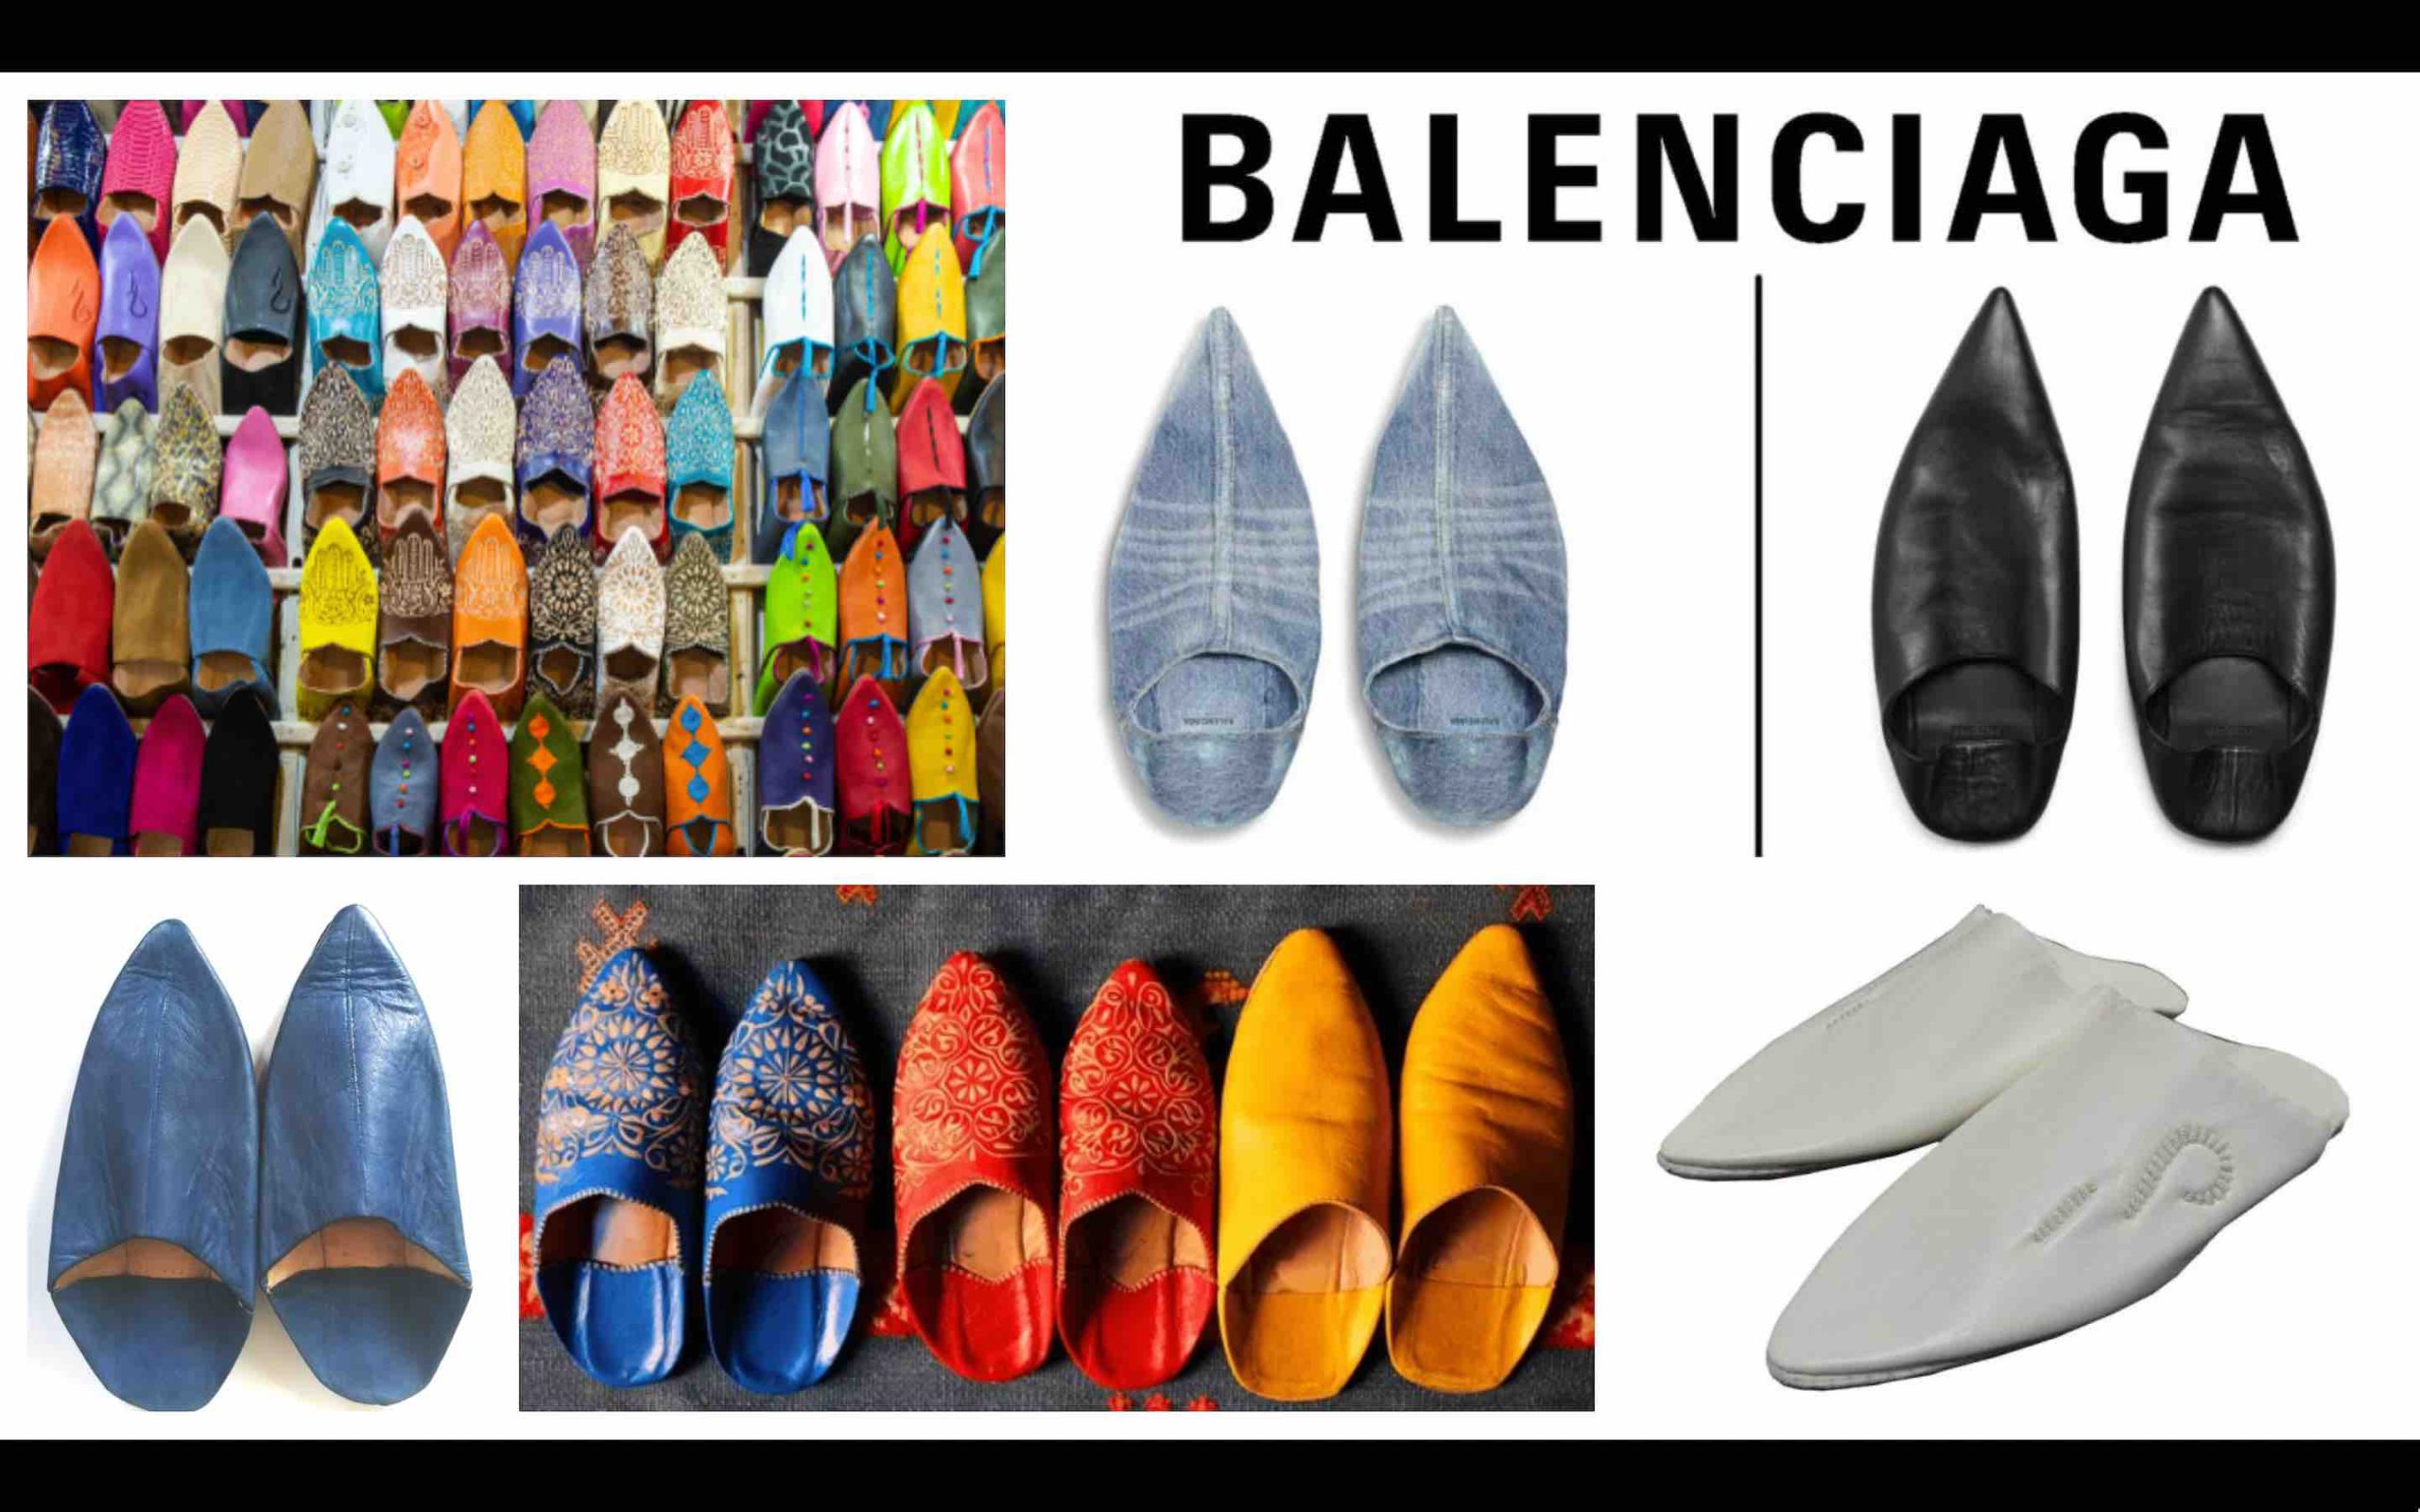 Balenciaga babouches marocaines Maroc Morocco